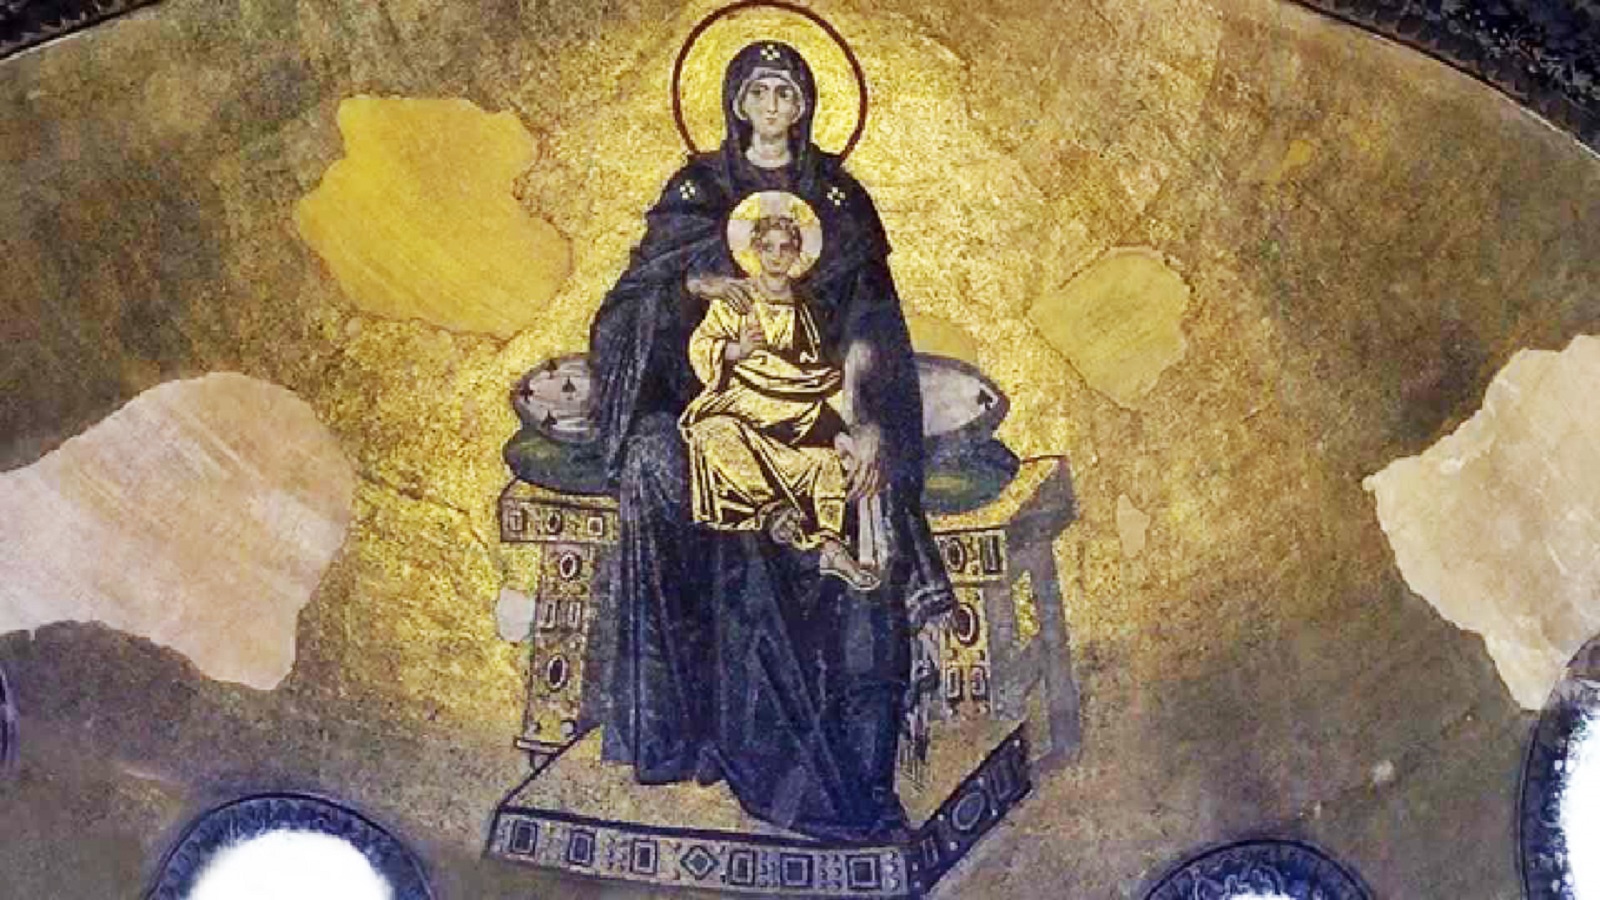 المسيح متربعا في حضن الأم الملكة، القرن التاسع